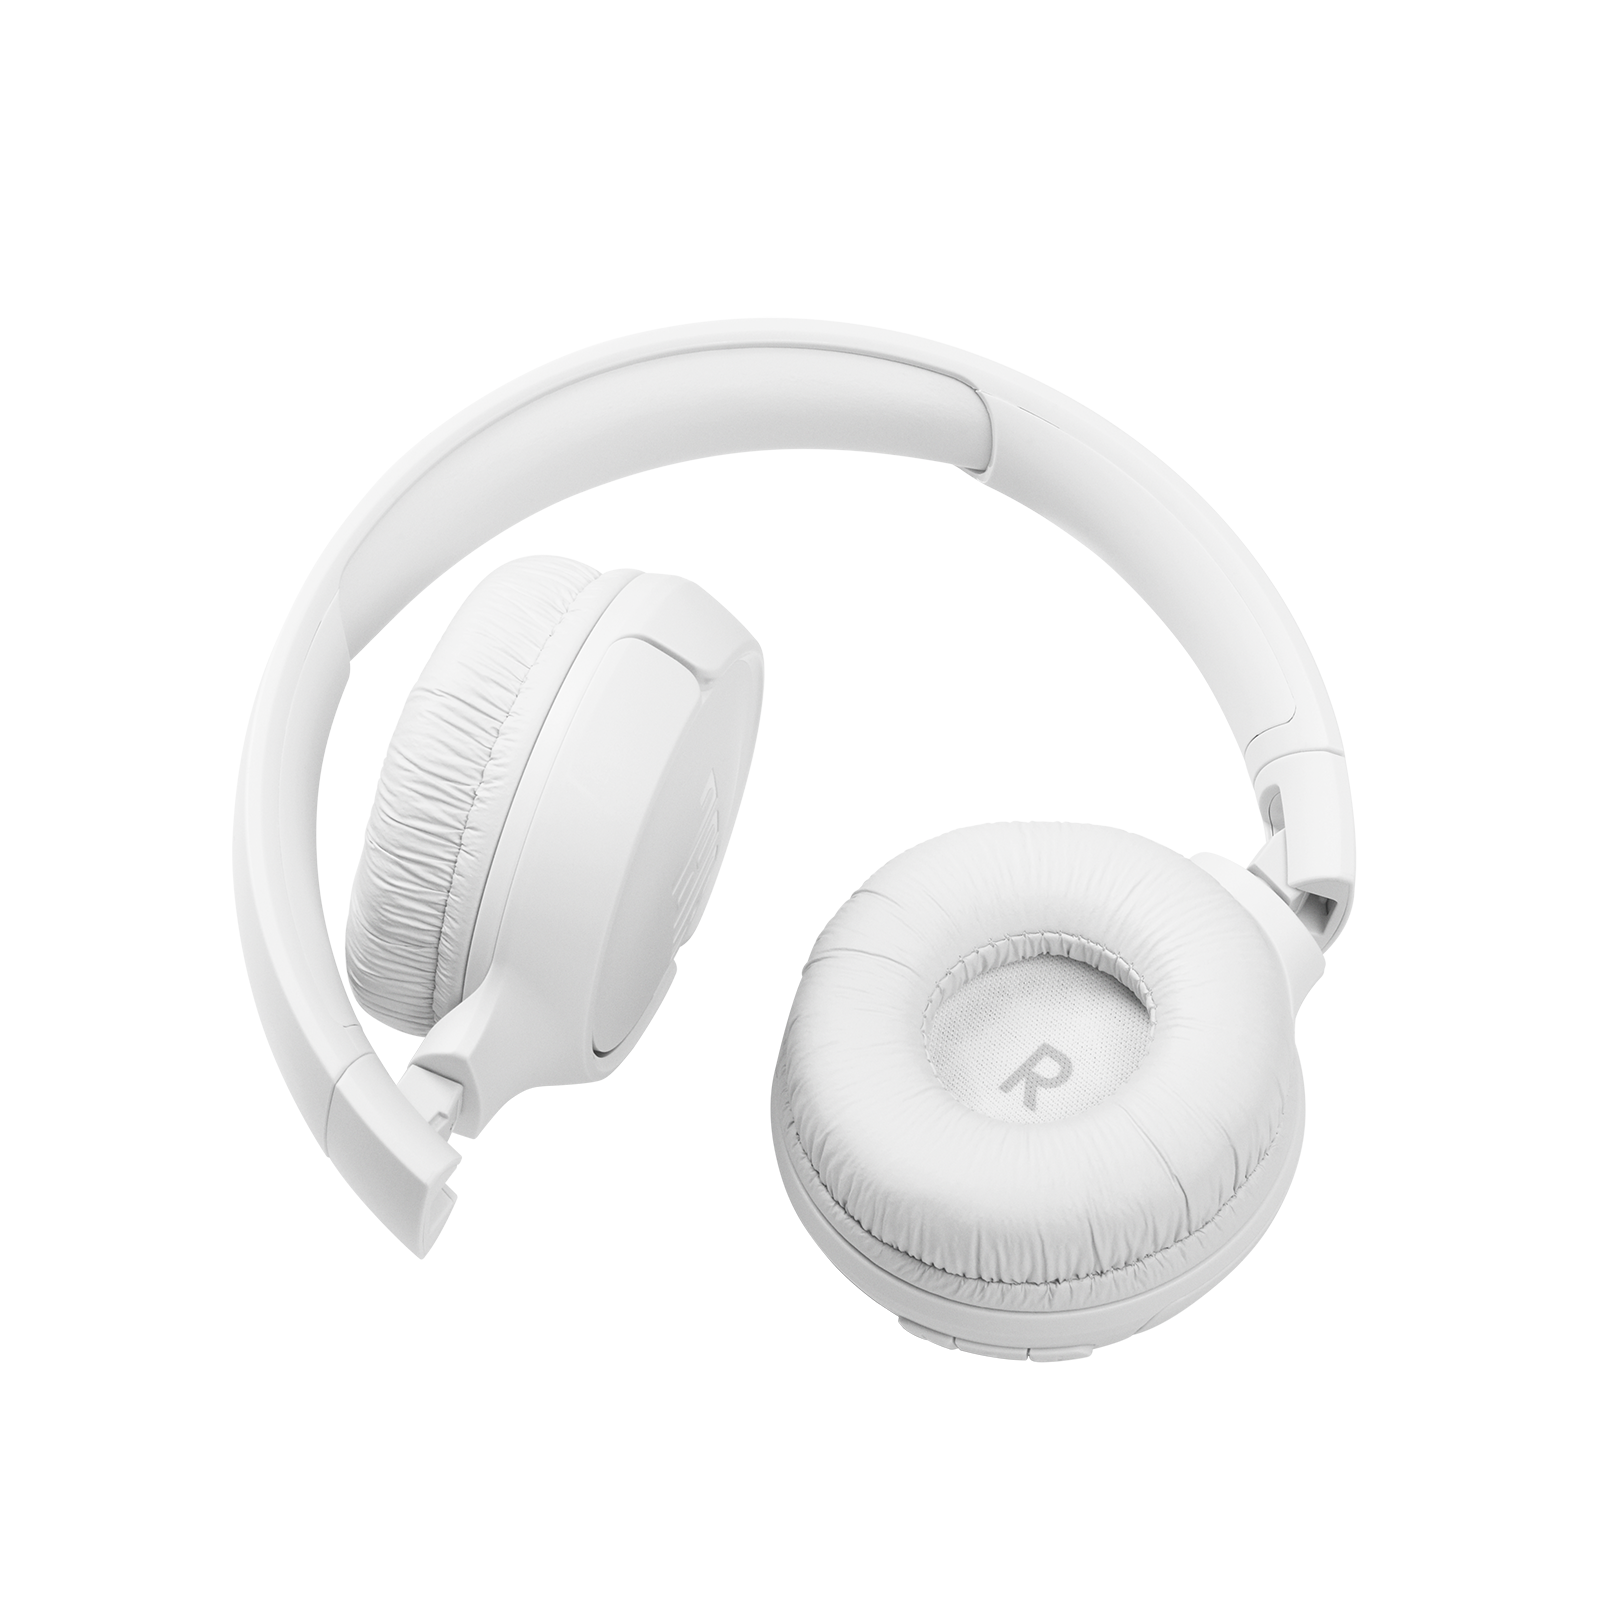 JBL Tune 510BT - White - Wireless on-ear headphones - Detailshot 1